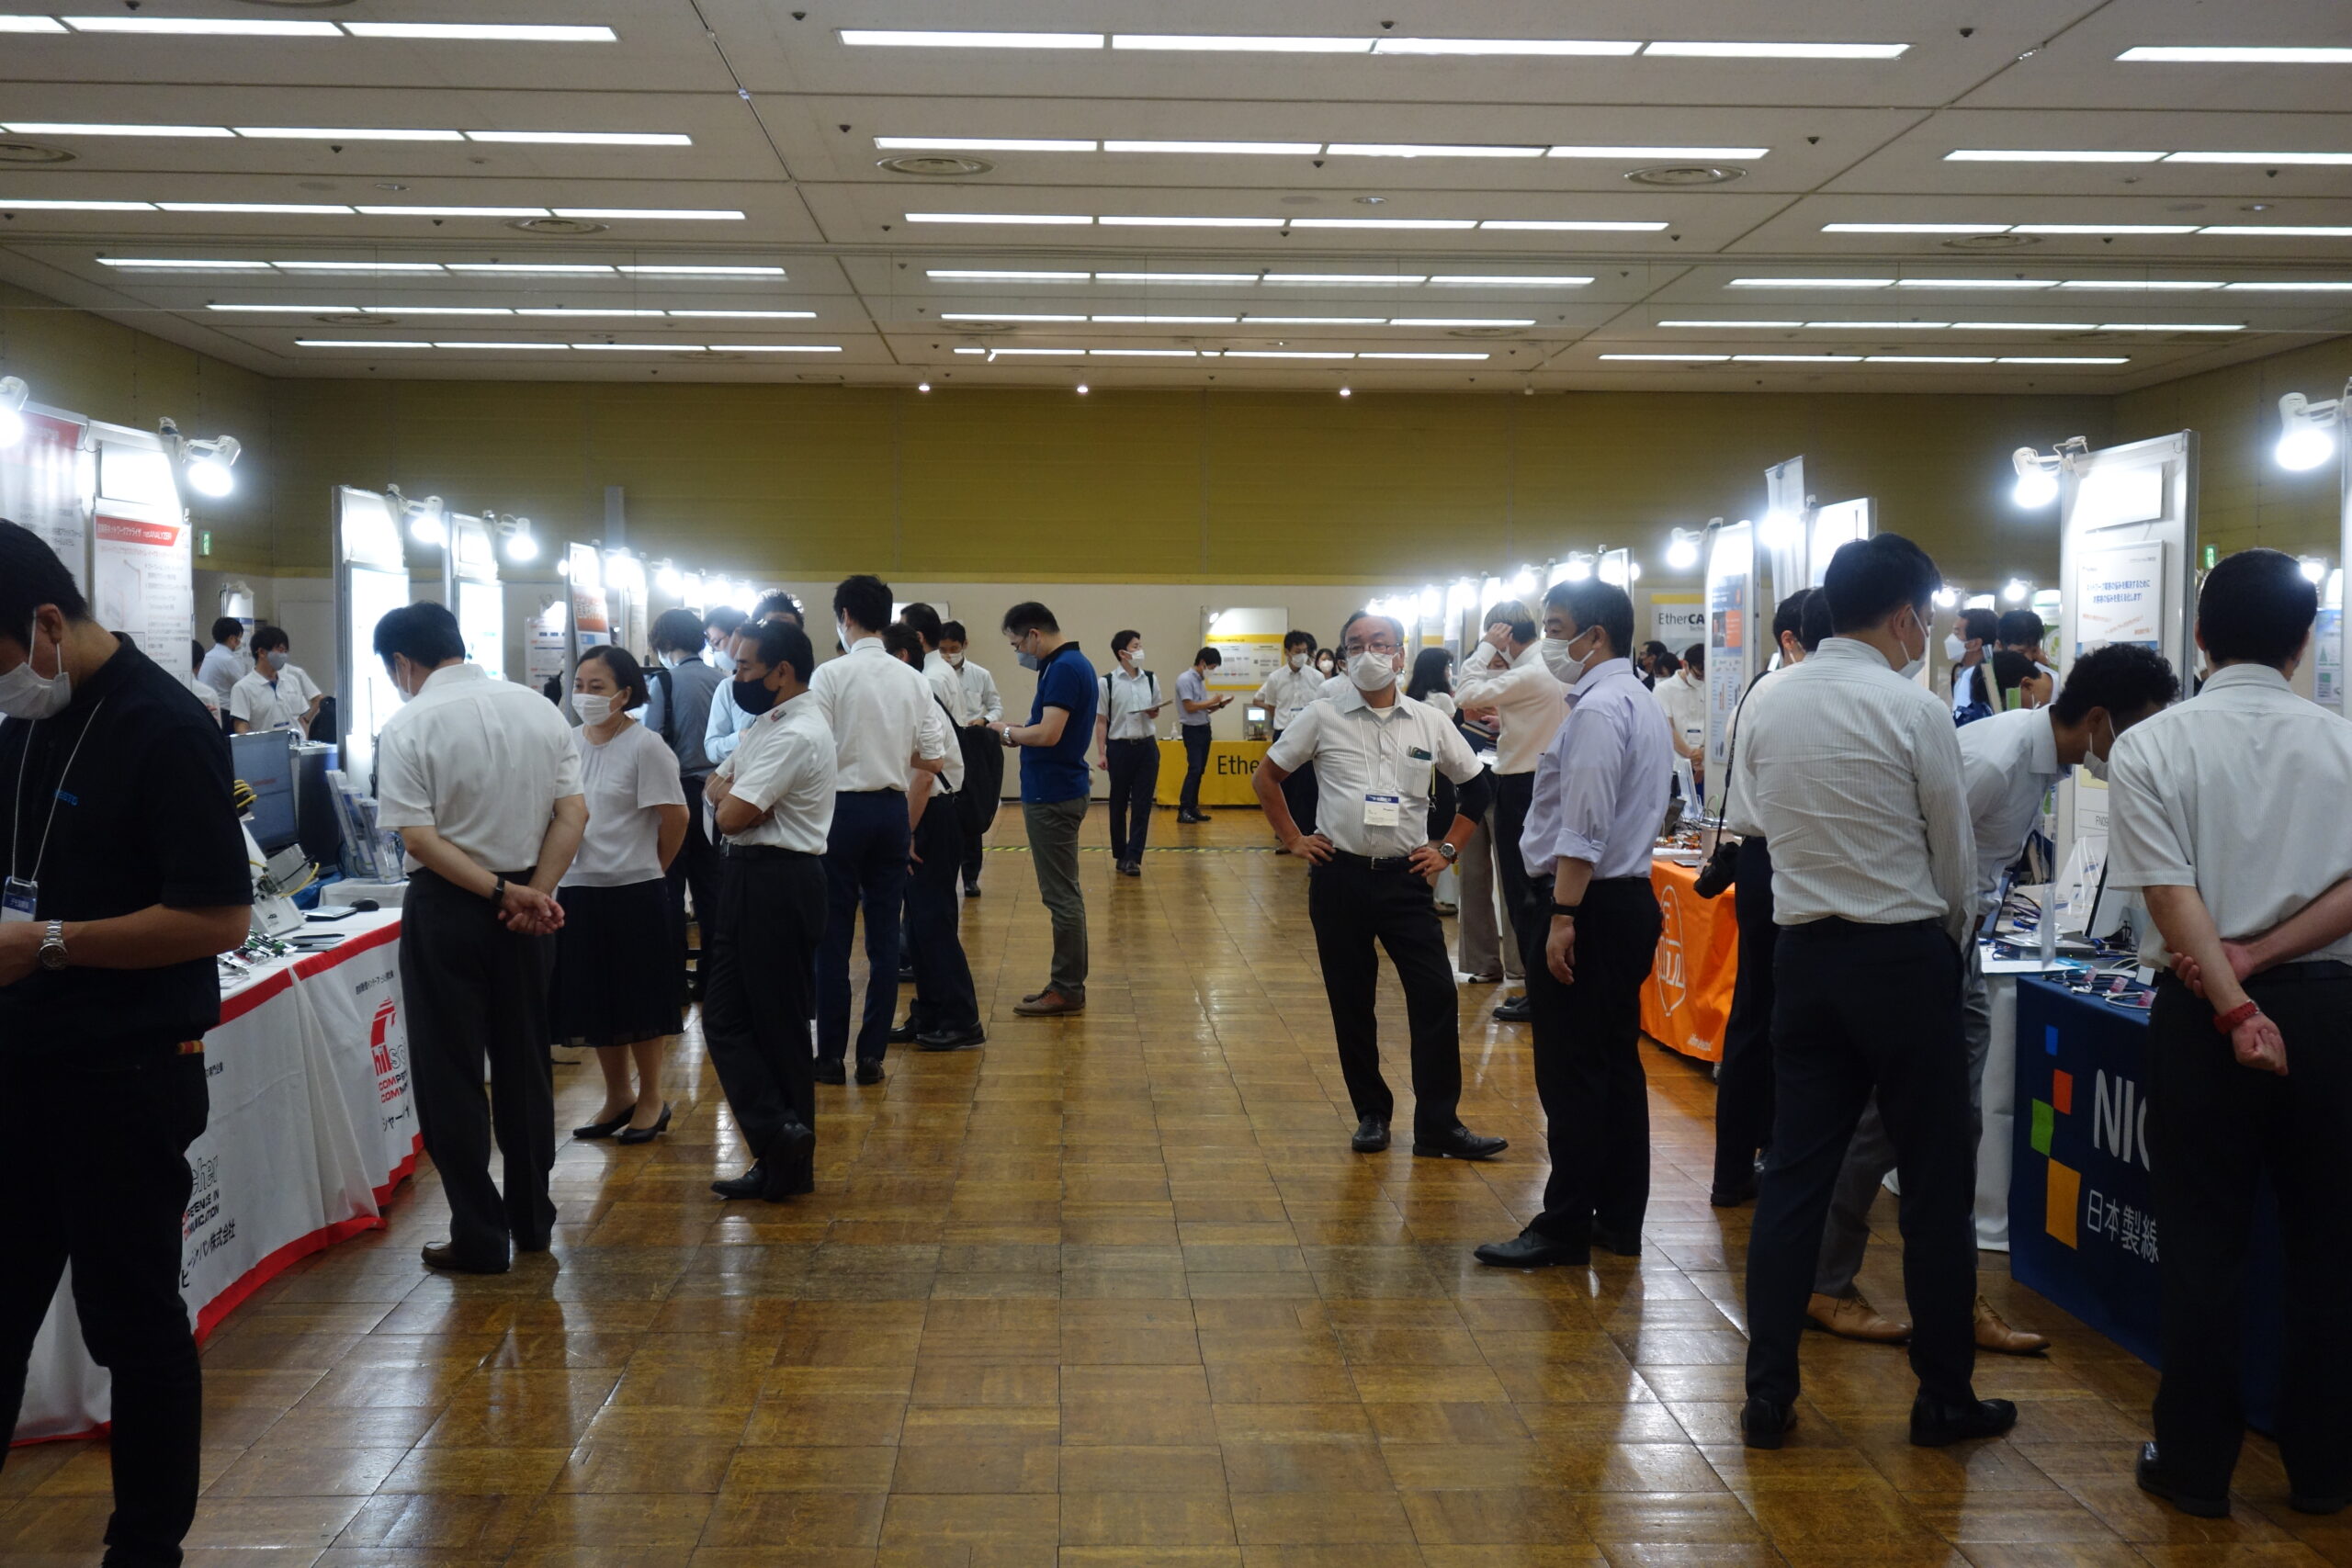 「産業オープンネット展」名古屋（７月19日）と東京（７月21日）で開催 展示とセミナーをリアルで実施